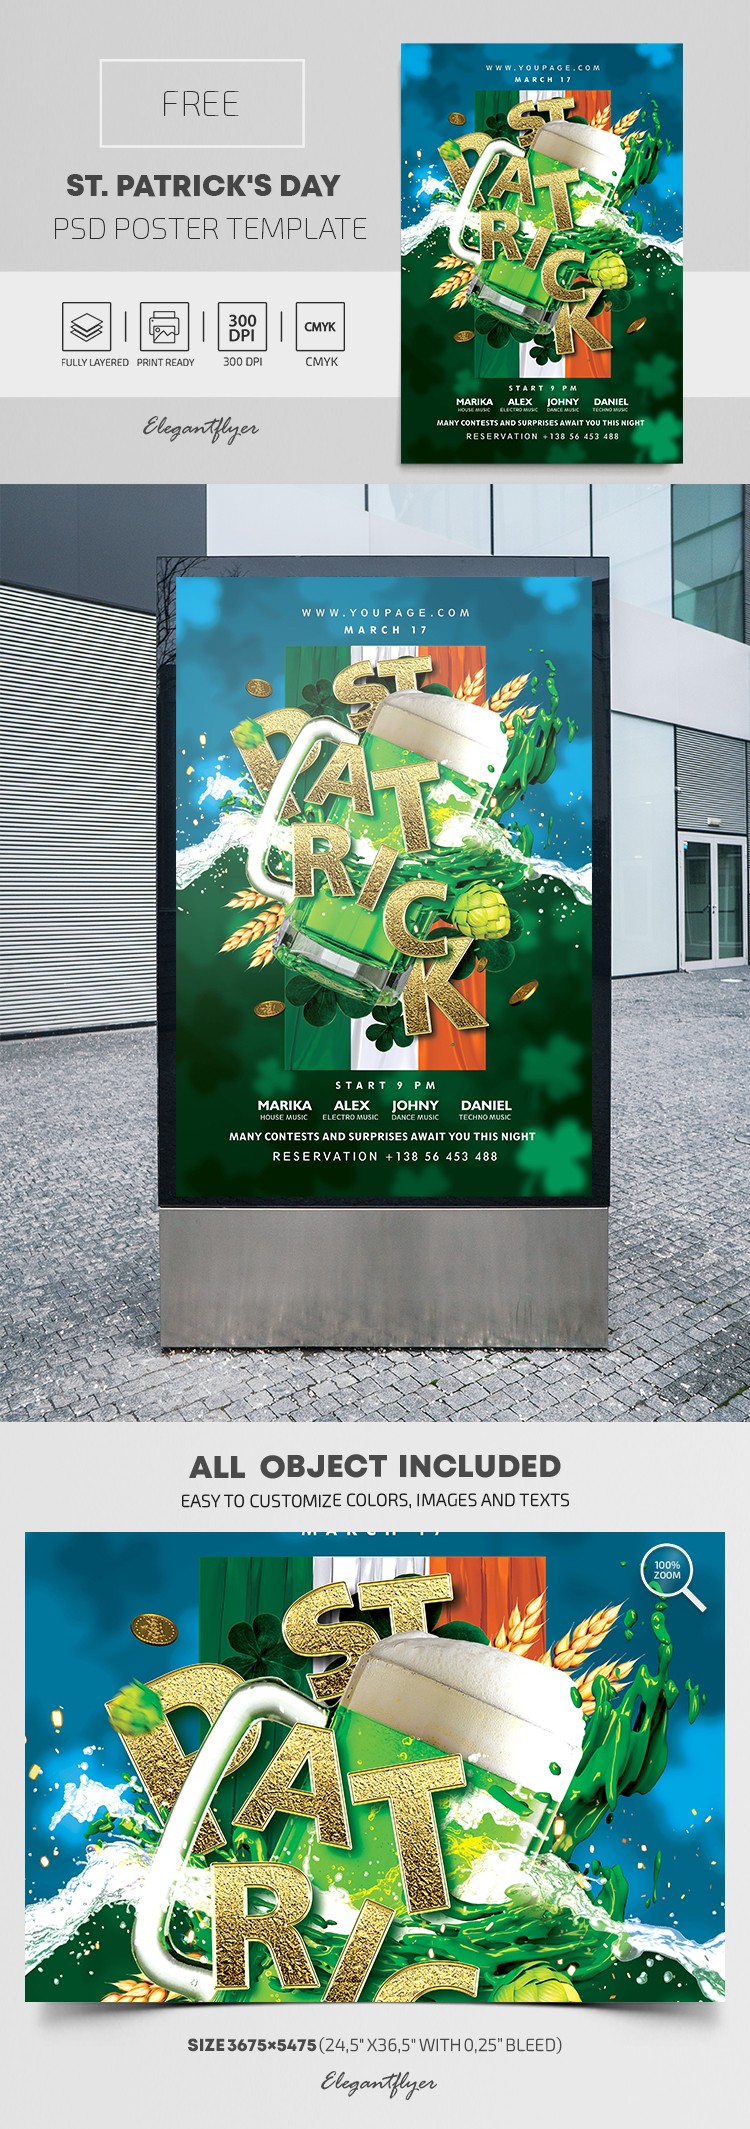 St. Patrick's Day Poster by ElegantFlyer